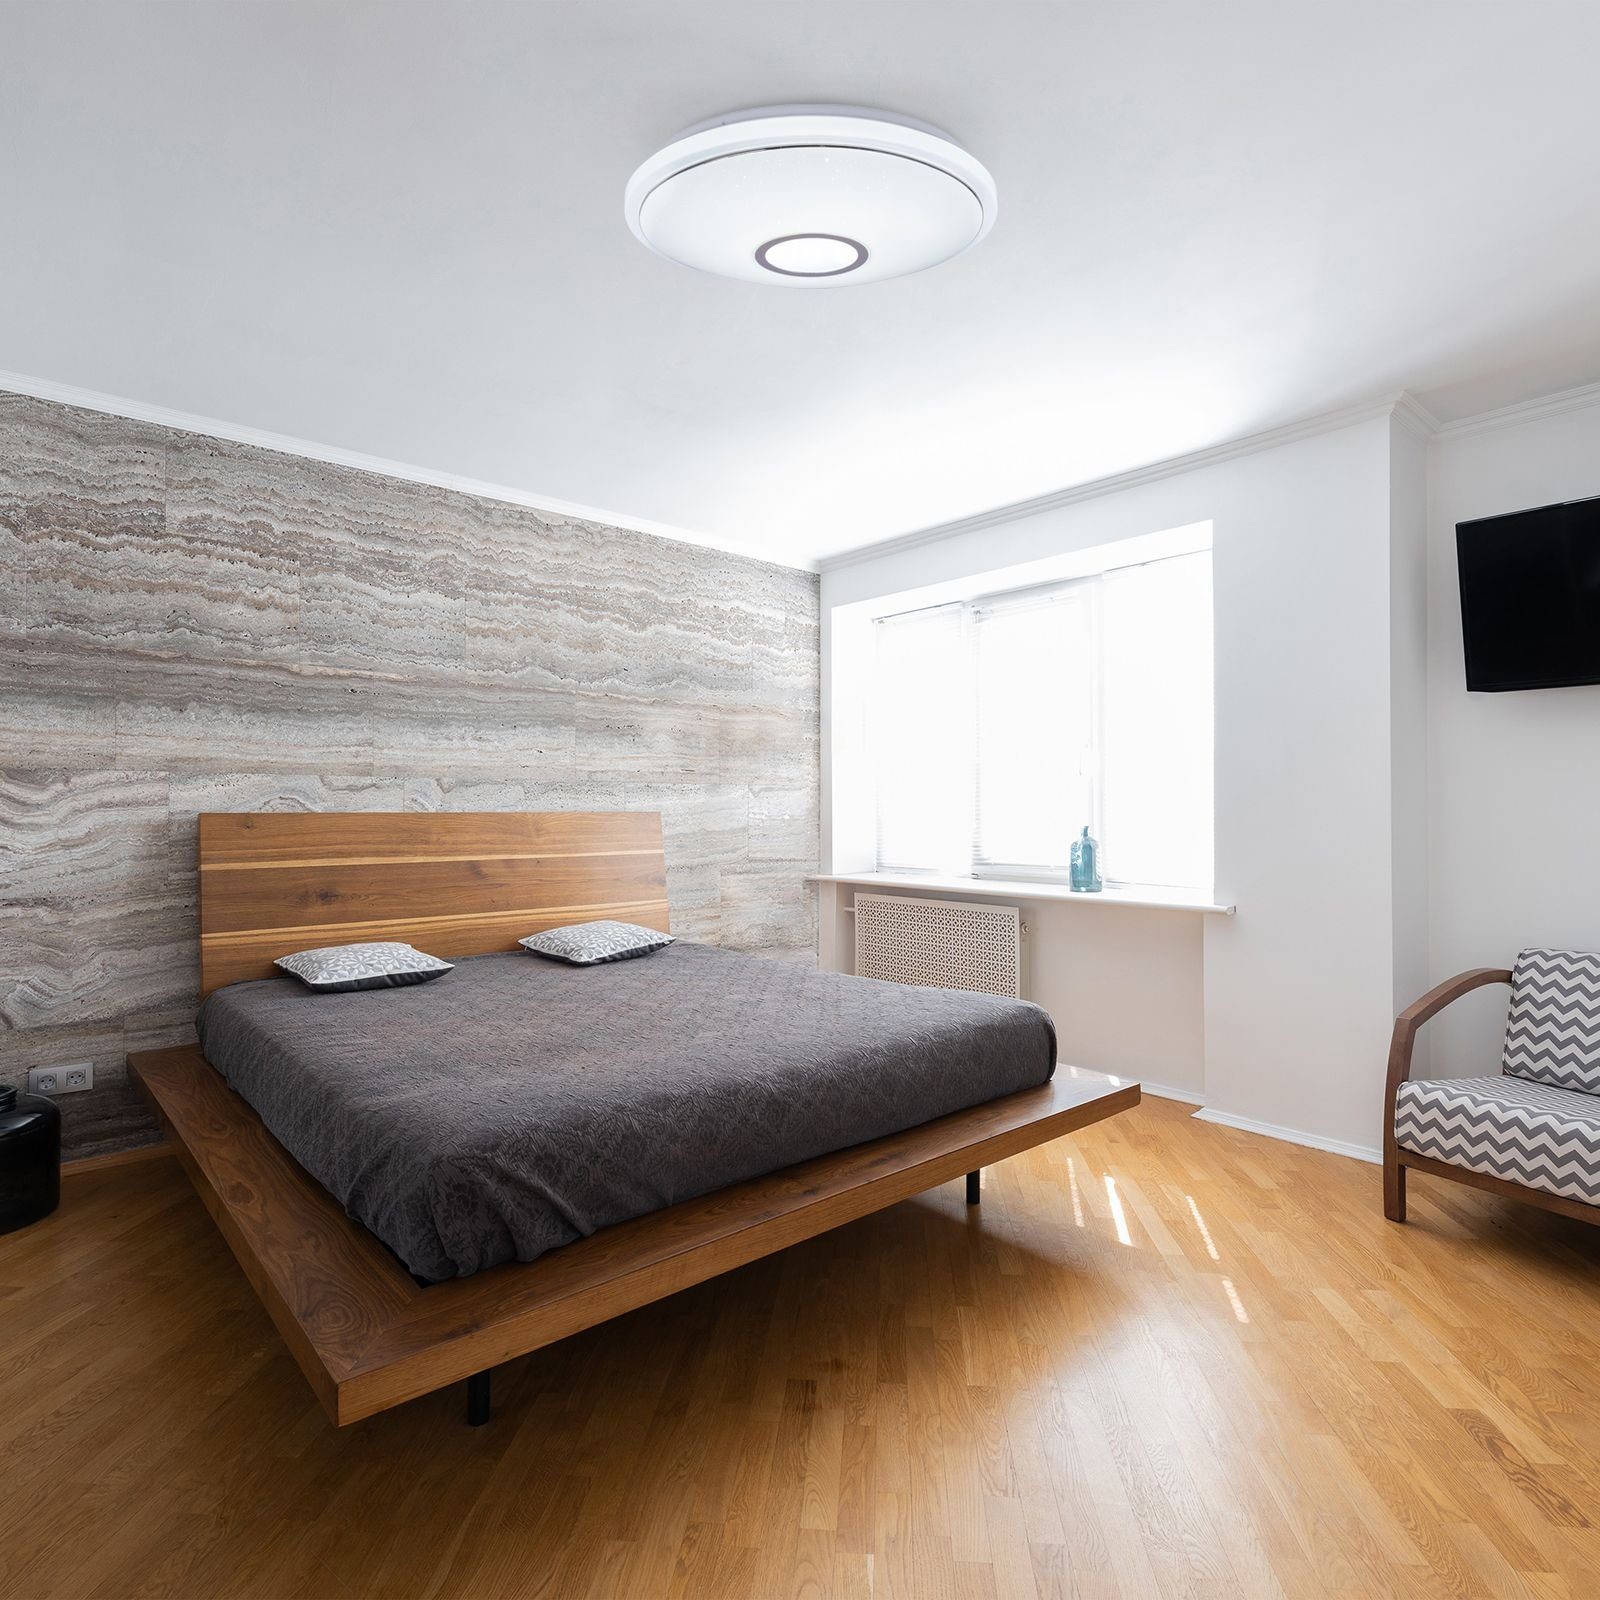 Wohnzimmer Schlafzimmer Deckenleuchte Dimmbar GLOBO LED Globo Deckenleuchte Deckenlampe